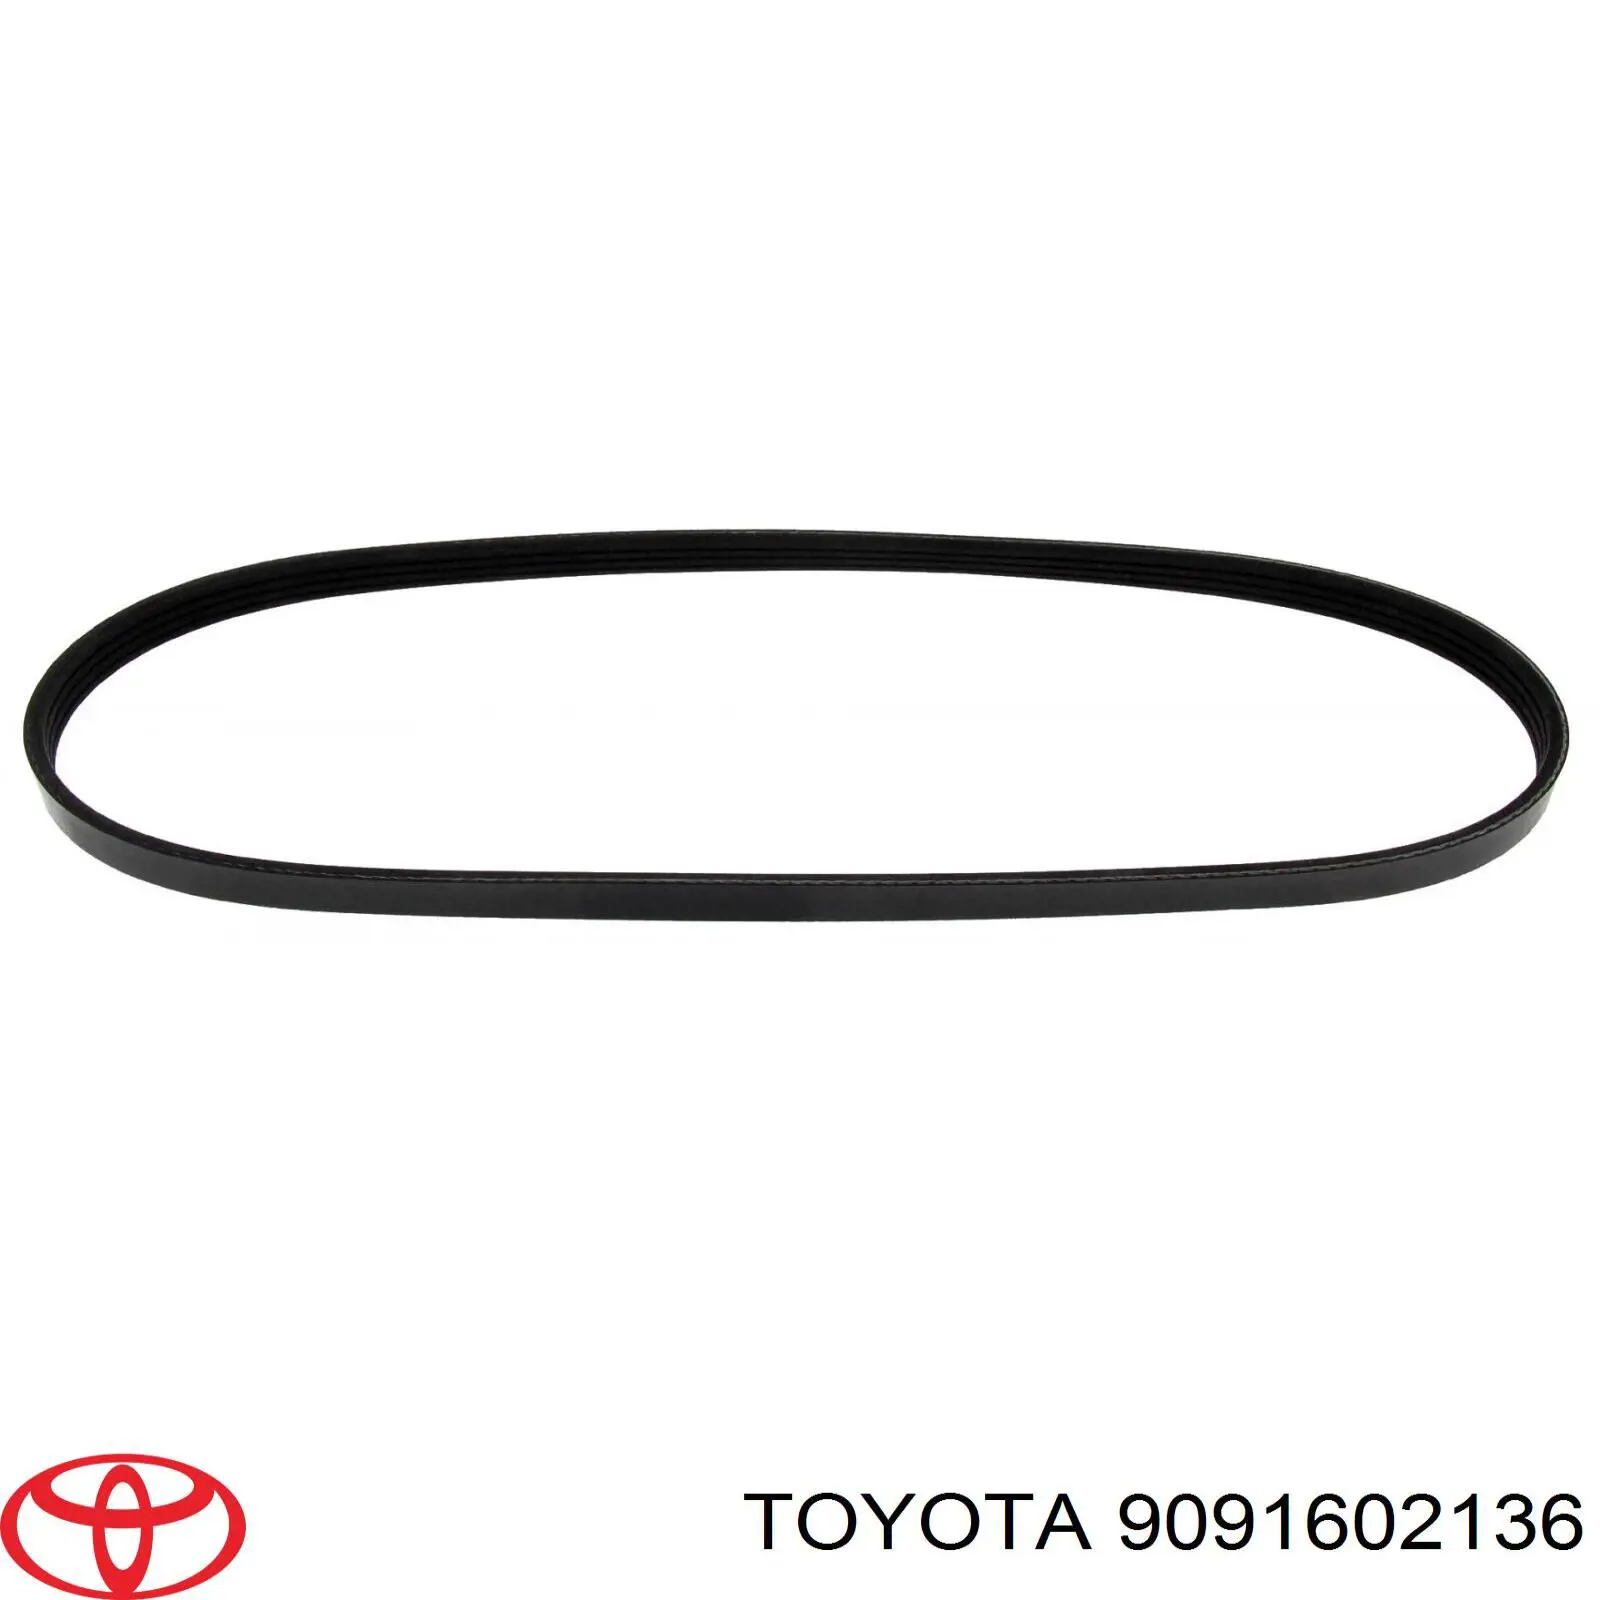 9091602136 Toyota correa trapezoidal